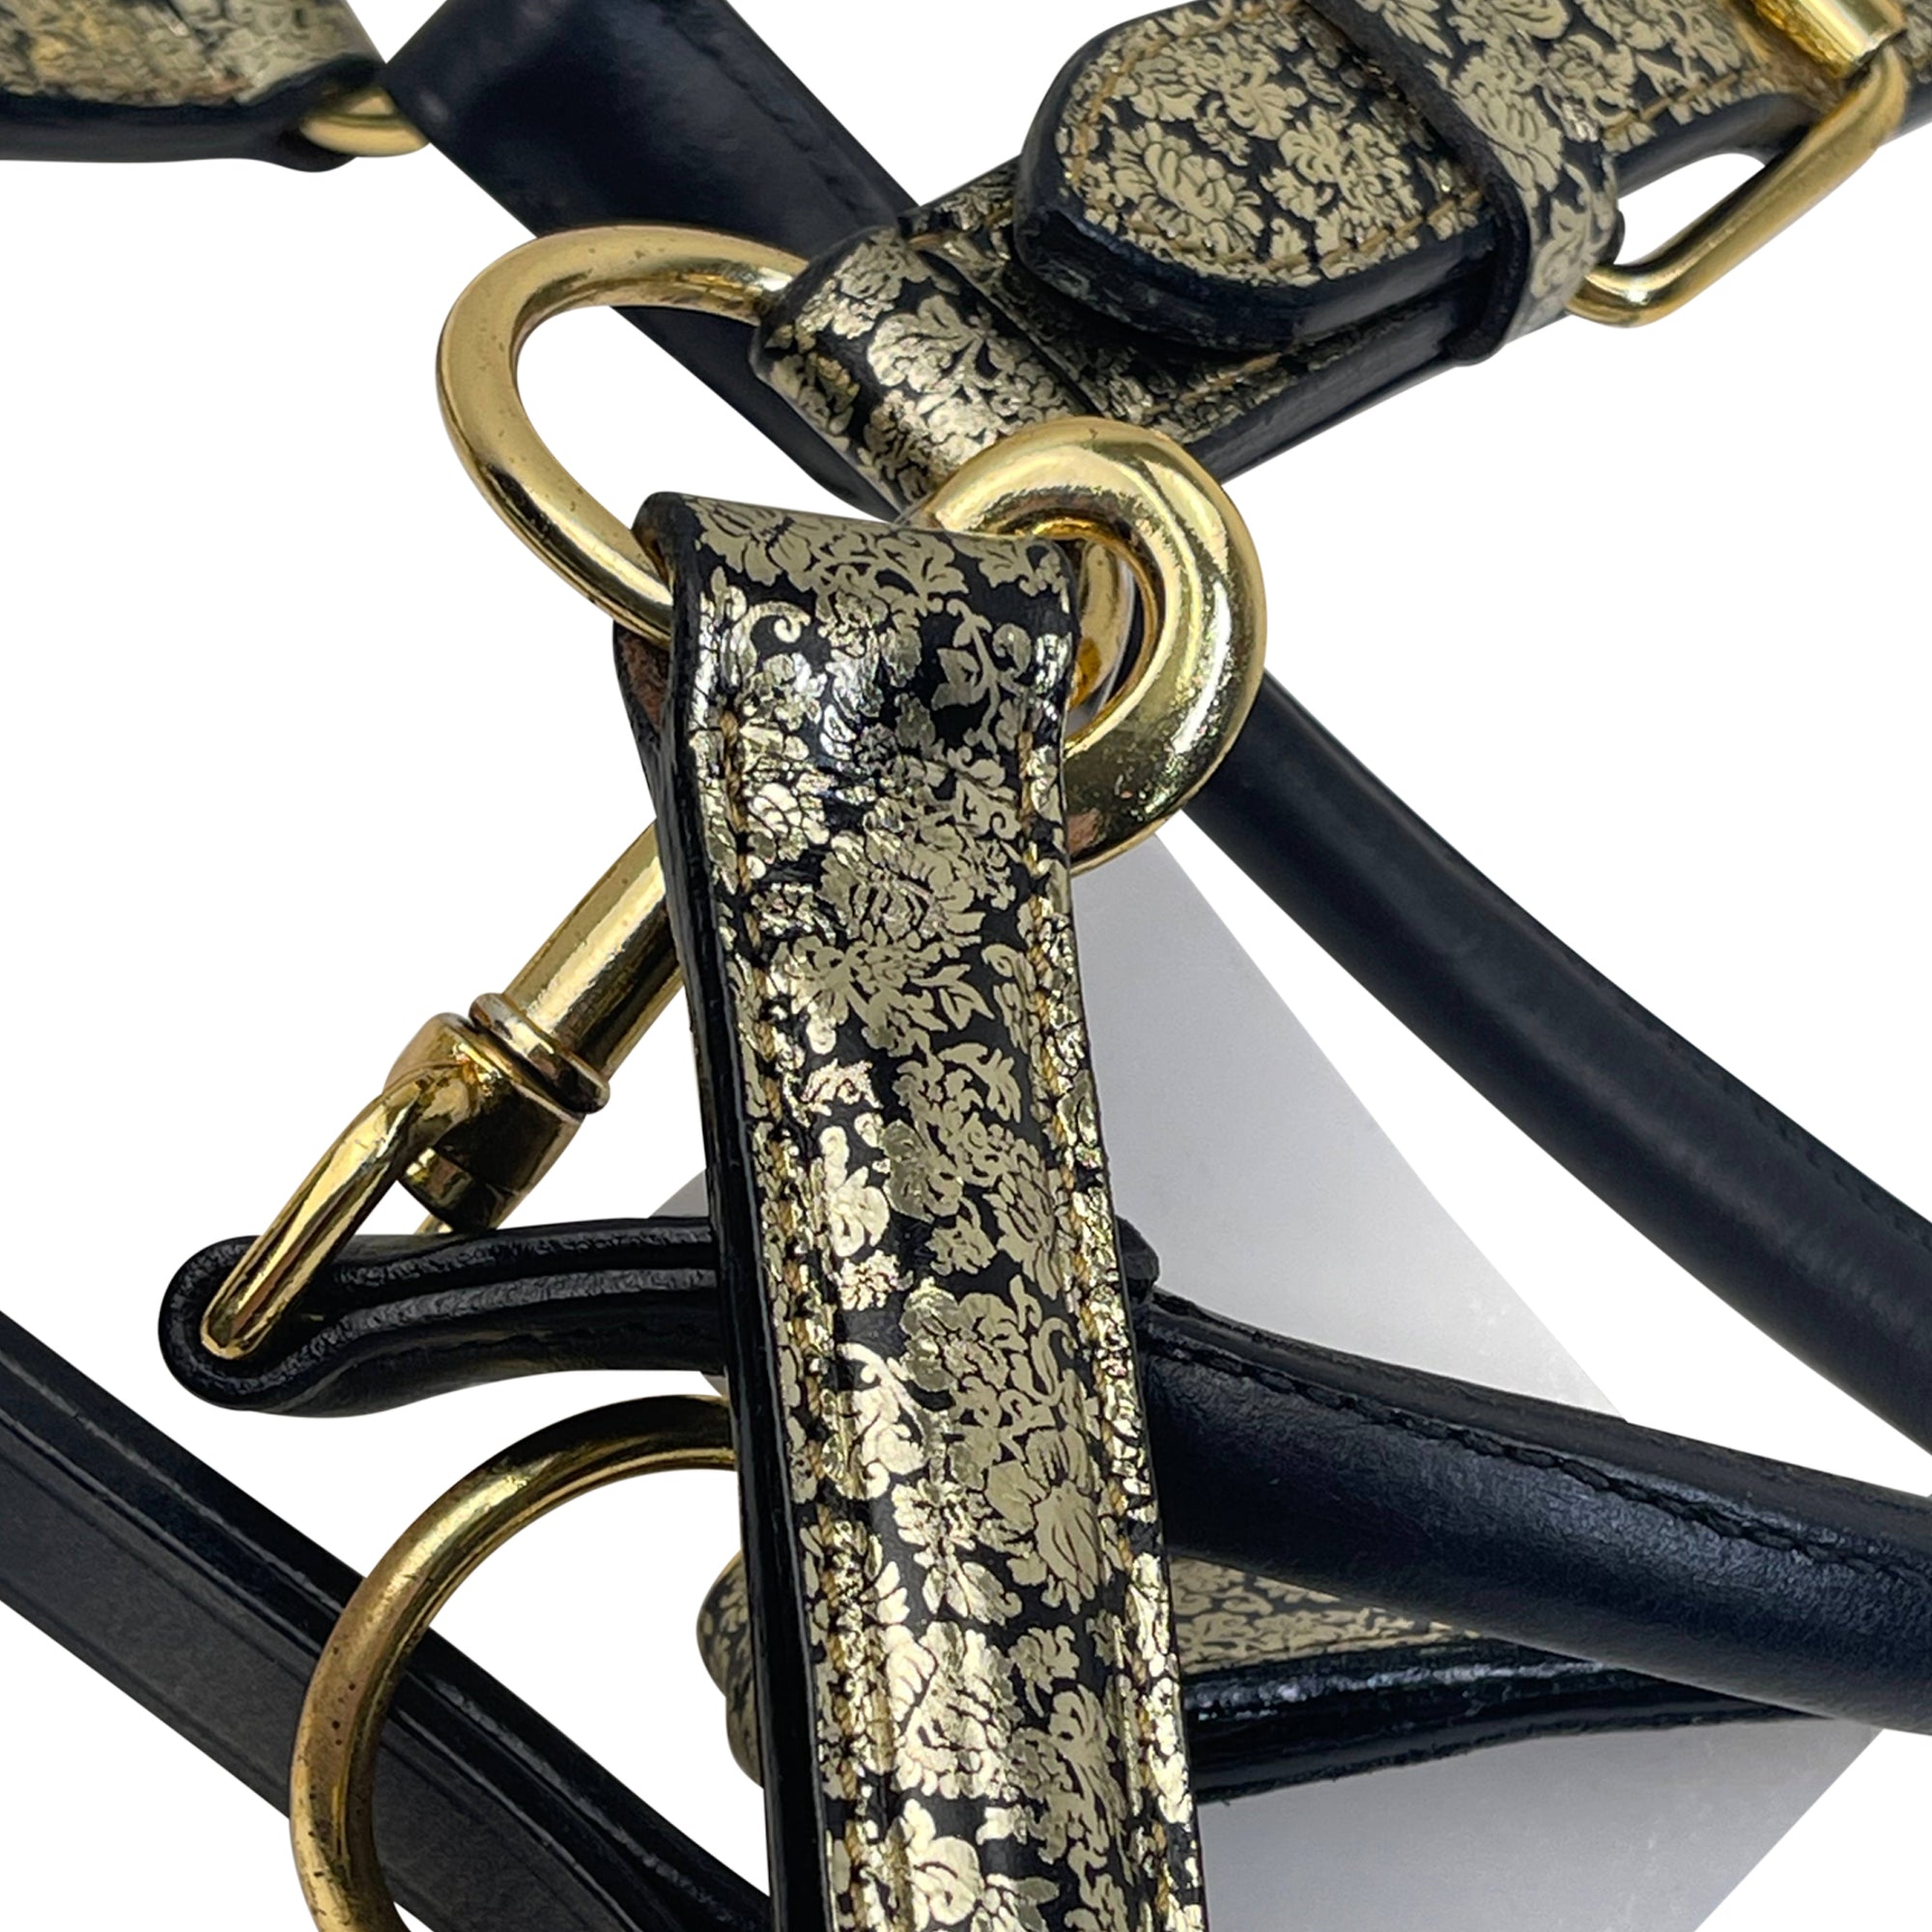 Halter Ego 'Damascus' Leather Halter in Black/Gold Floral